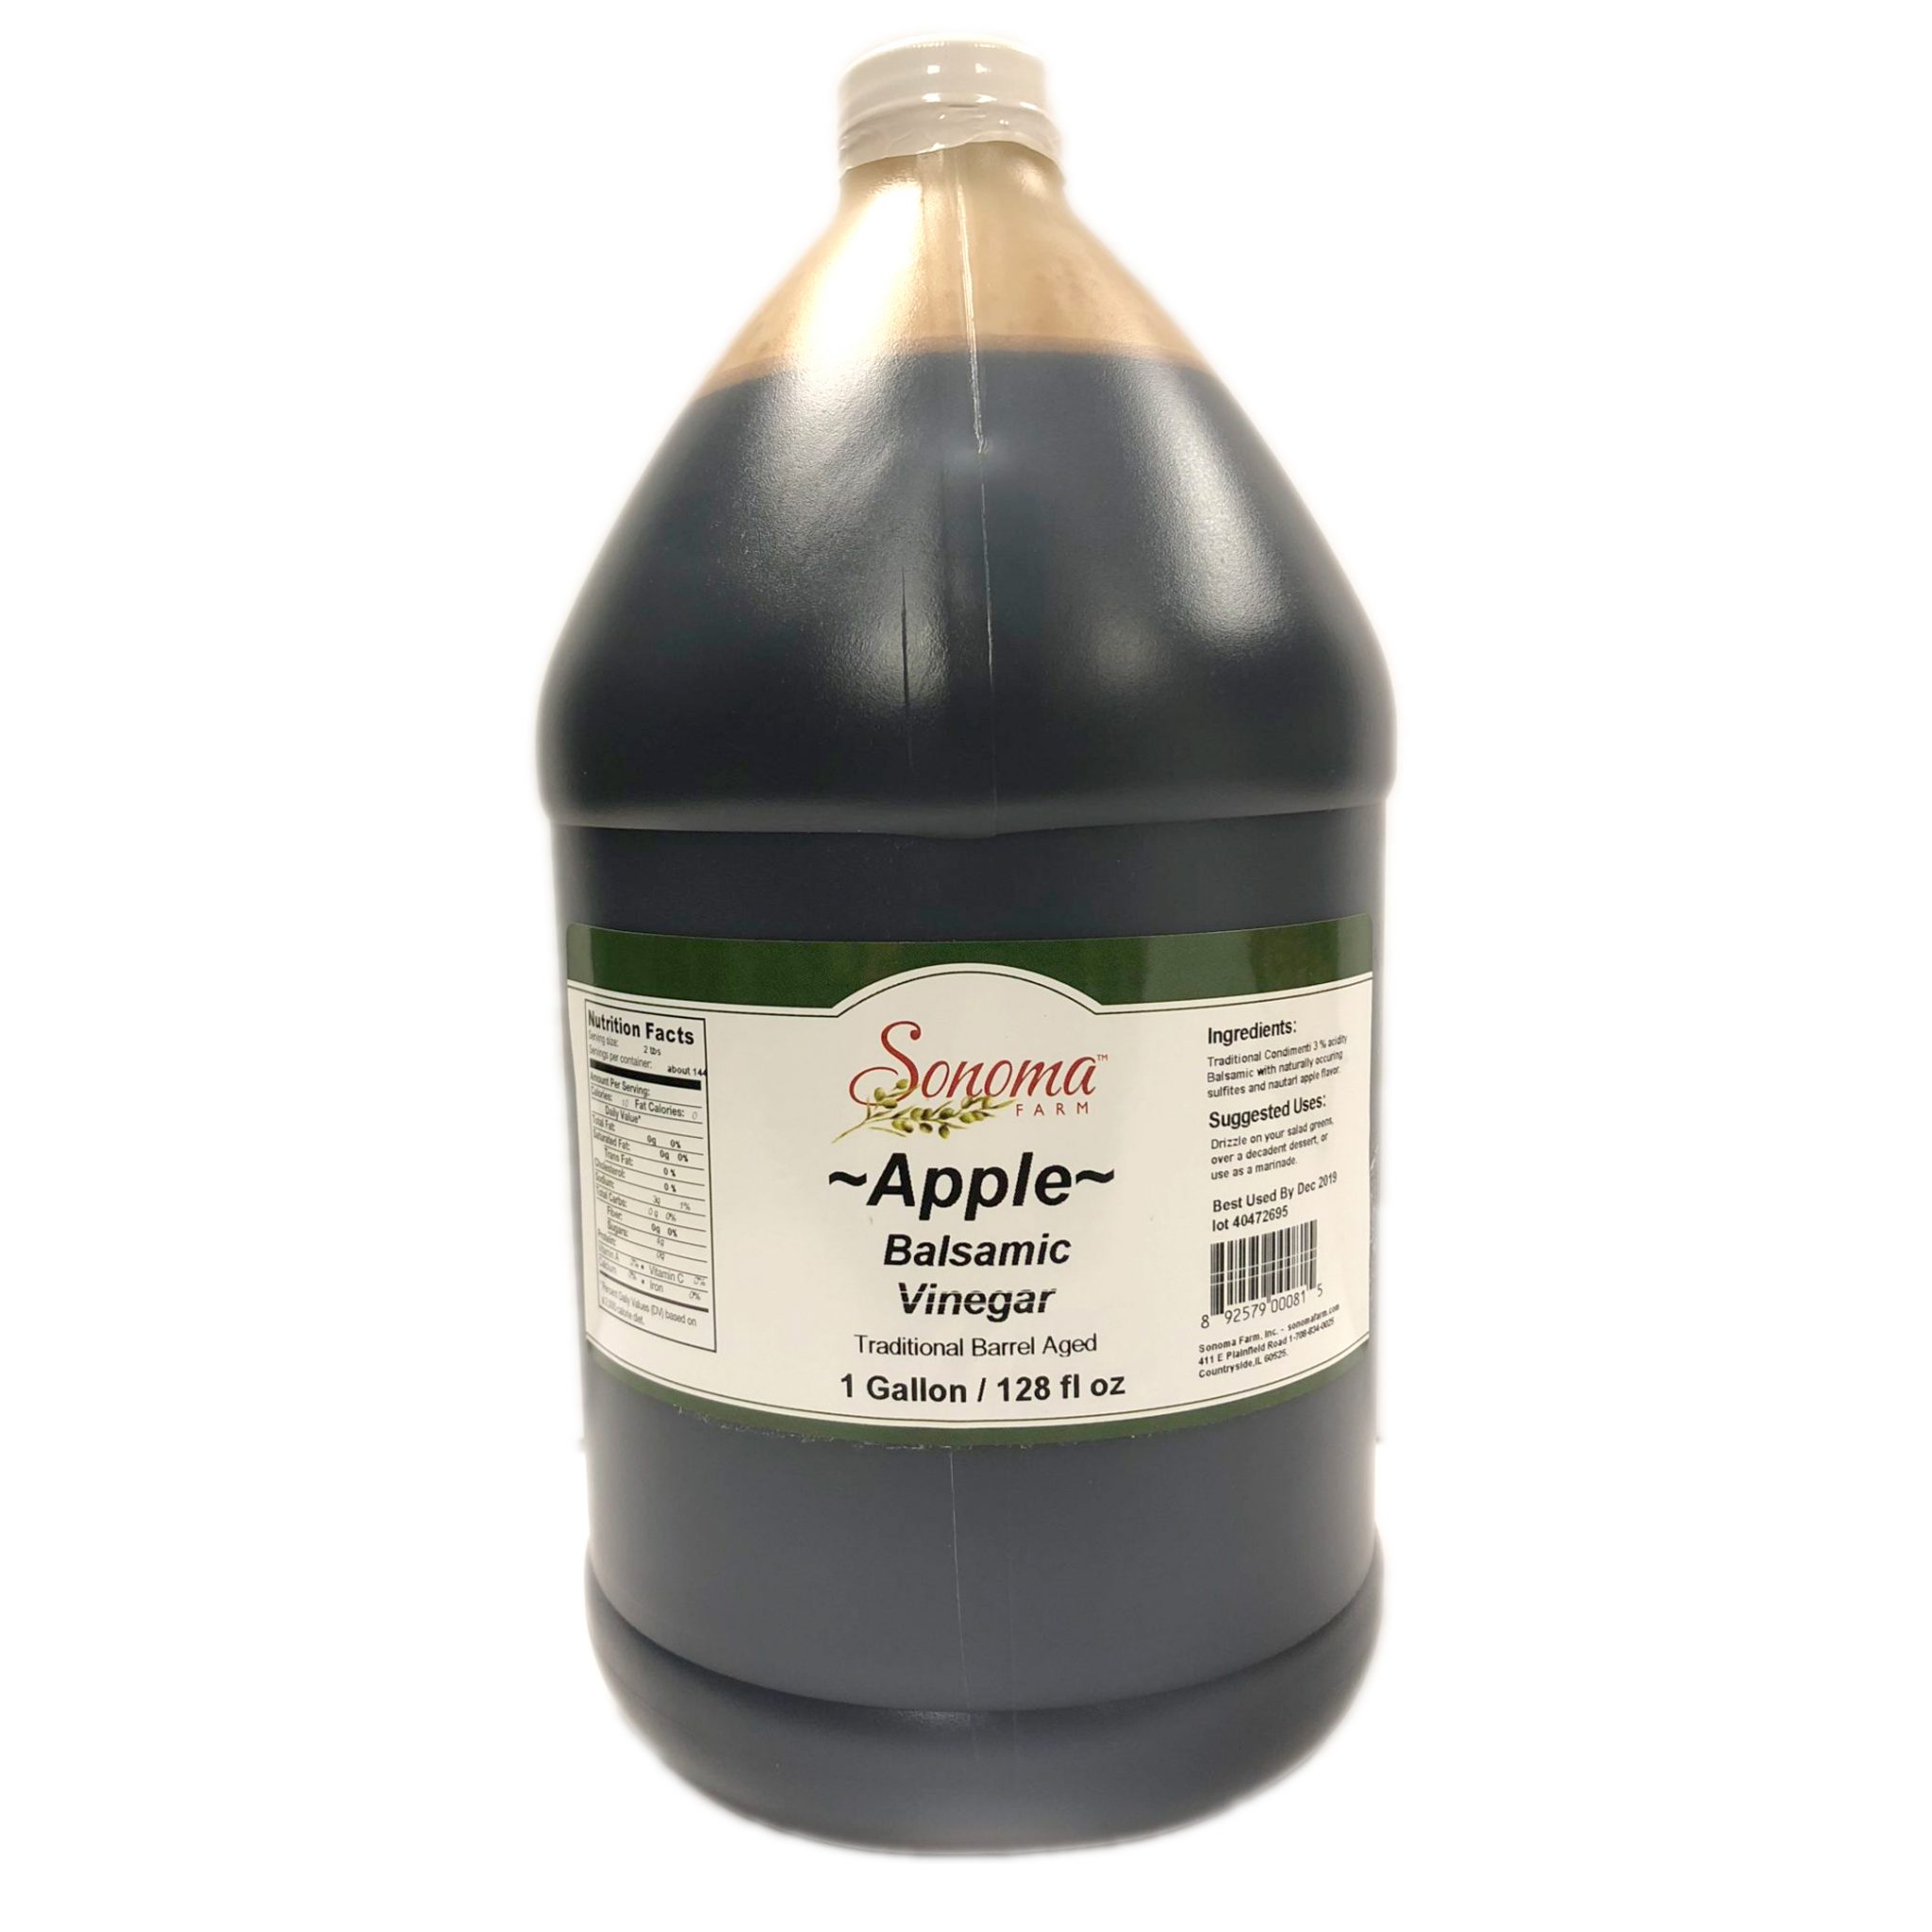 https://www.sonomafarm.com/product/apple-balsamic-vinegar-traditional-barrel-aged-bulk-1-gallon-3-8-liter/